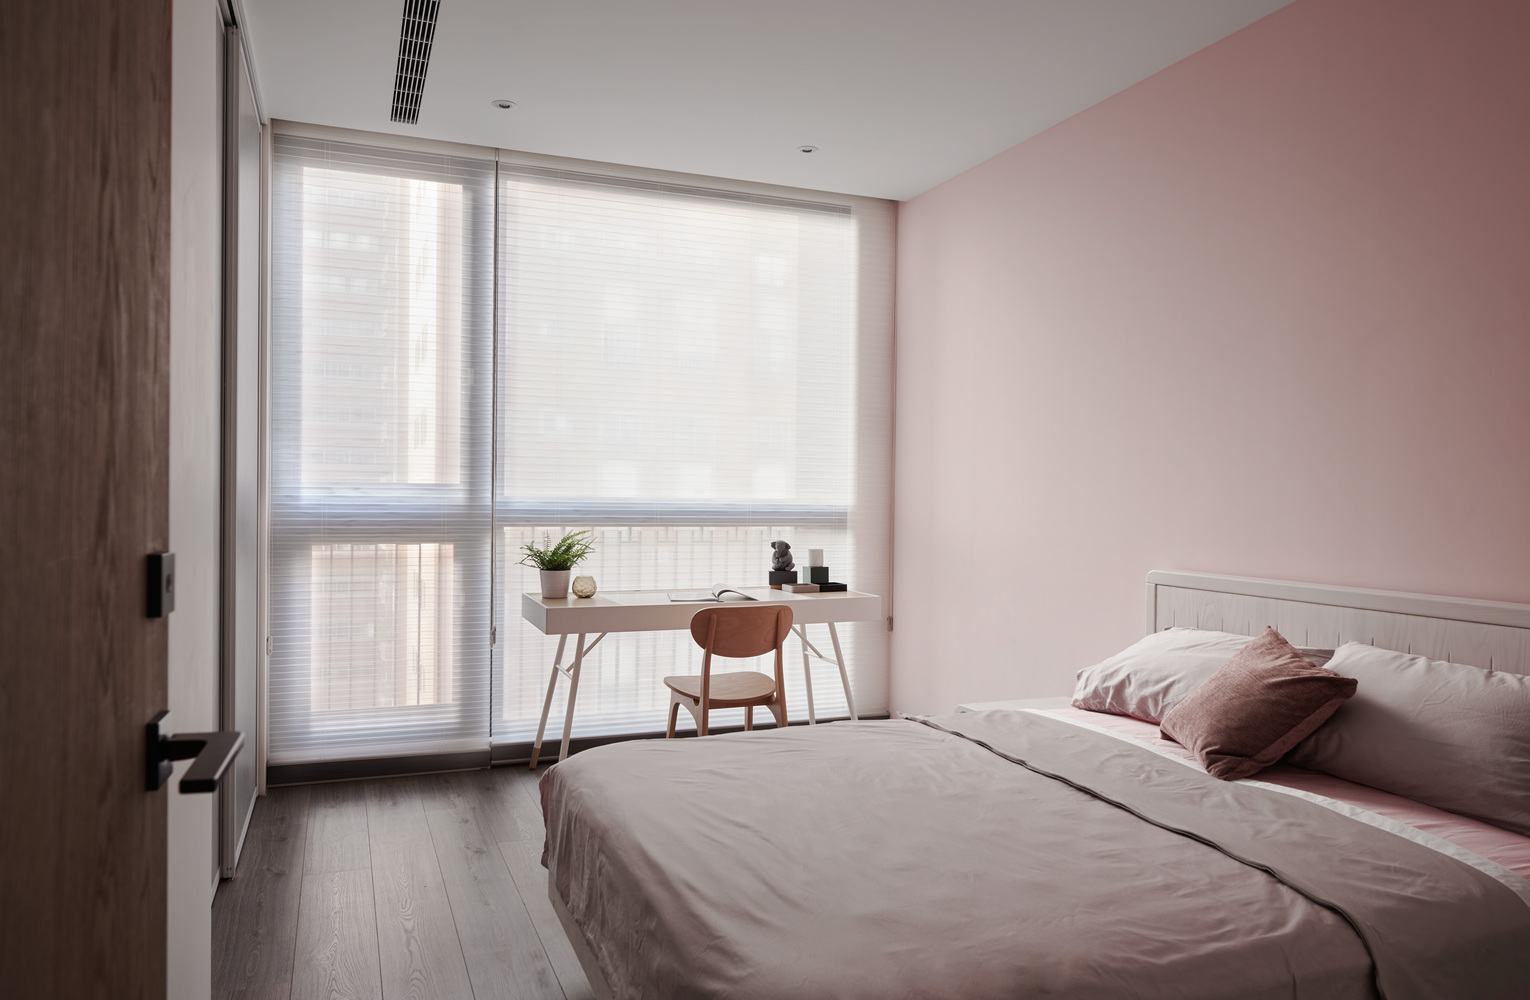 次卧以粉色为主要色调，并配以木质地板，展现出空间的高级品质感。